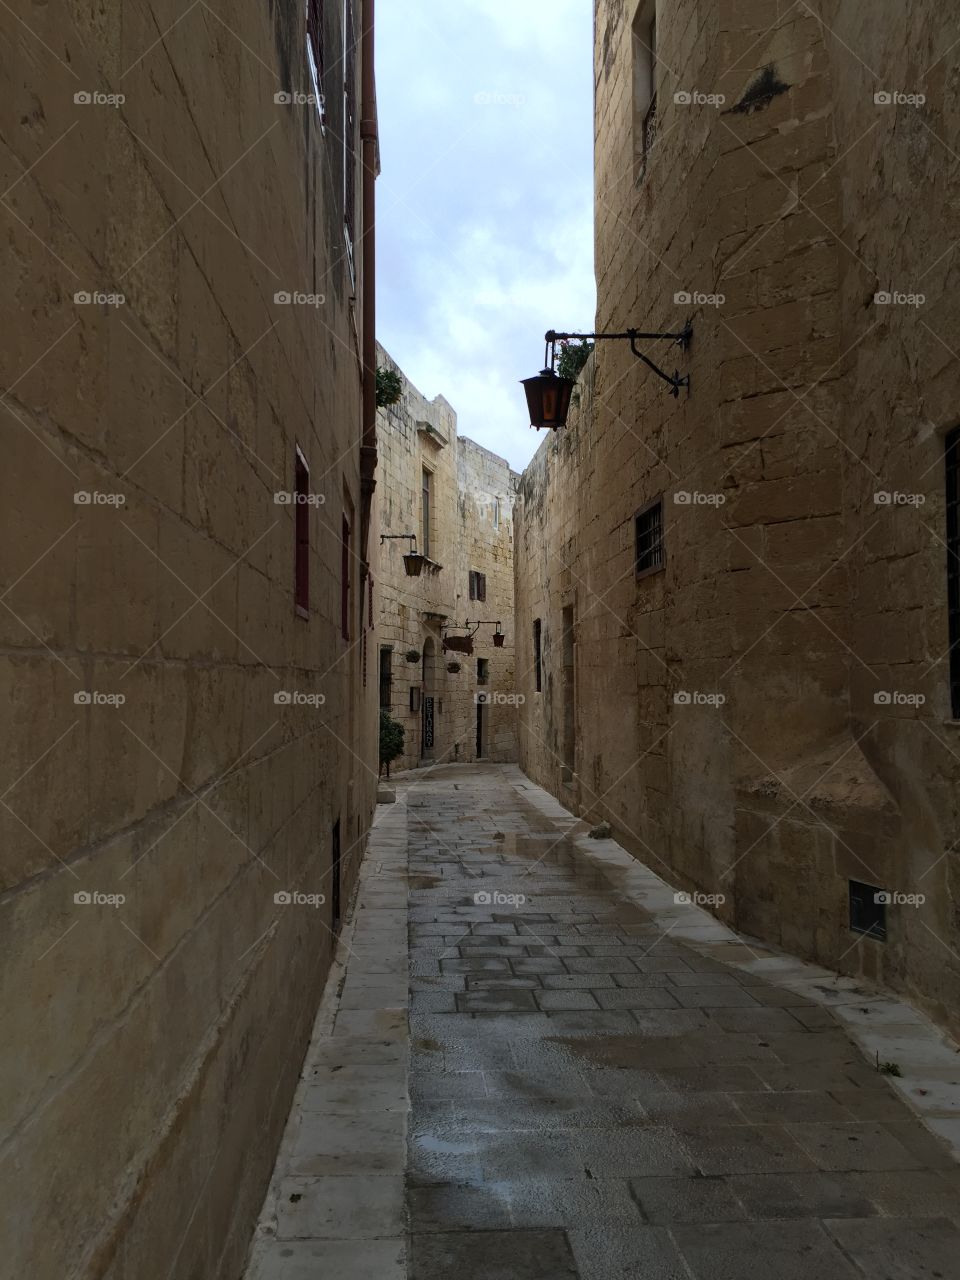 Limestone alleyway in Malta 